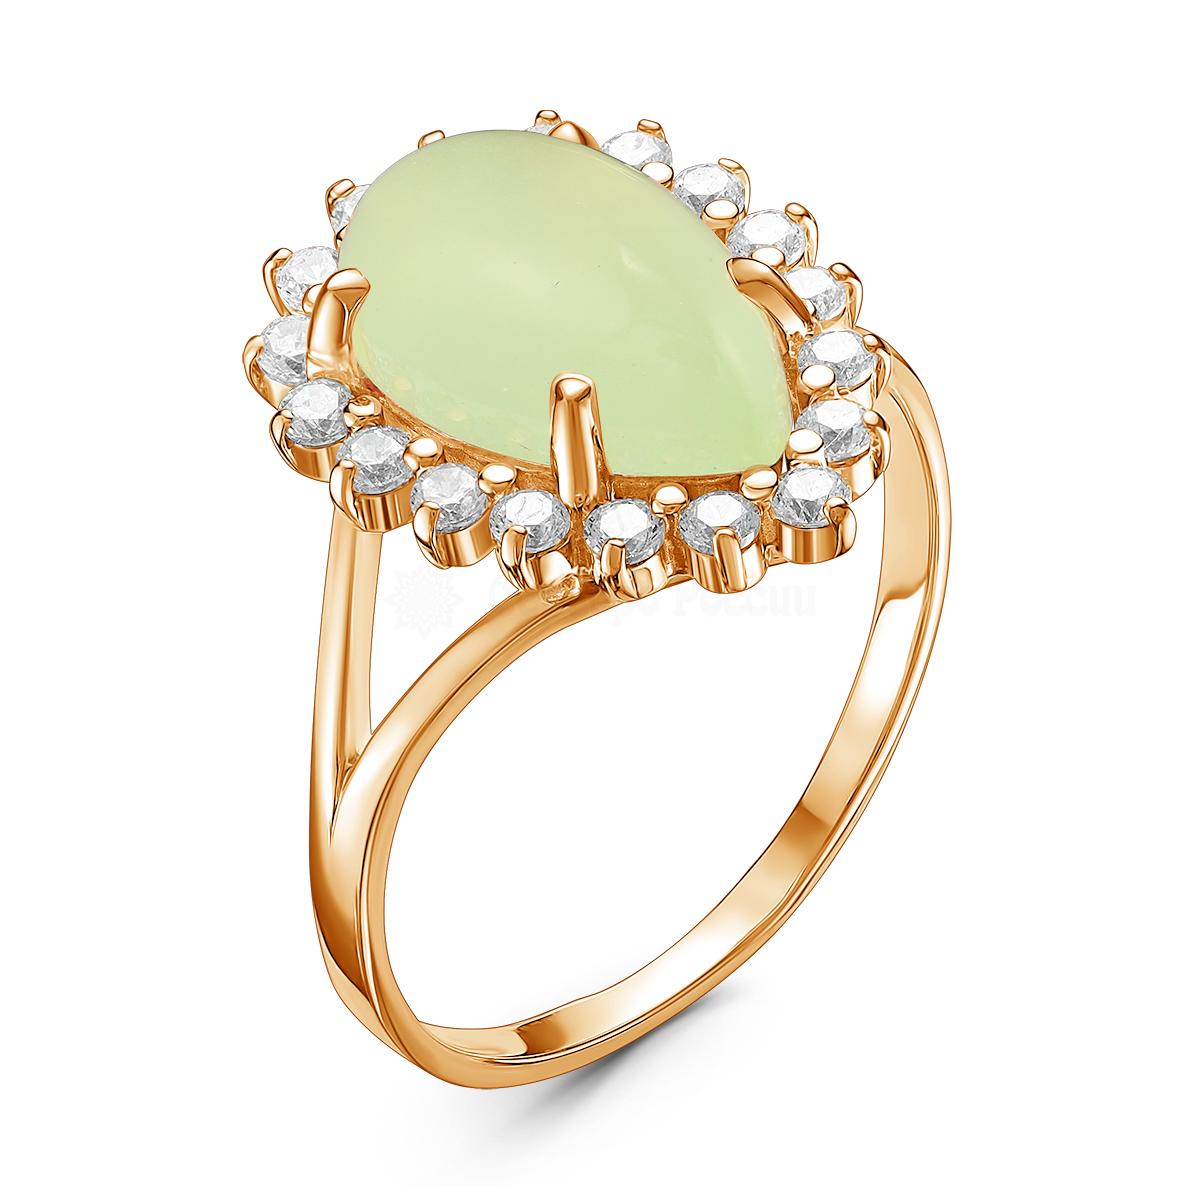 Кольцо женское из золочёного серебра с плавленым кварцем цвета зеленый агат и фианитами К-3203зк10900